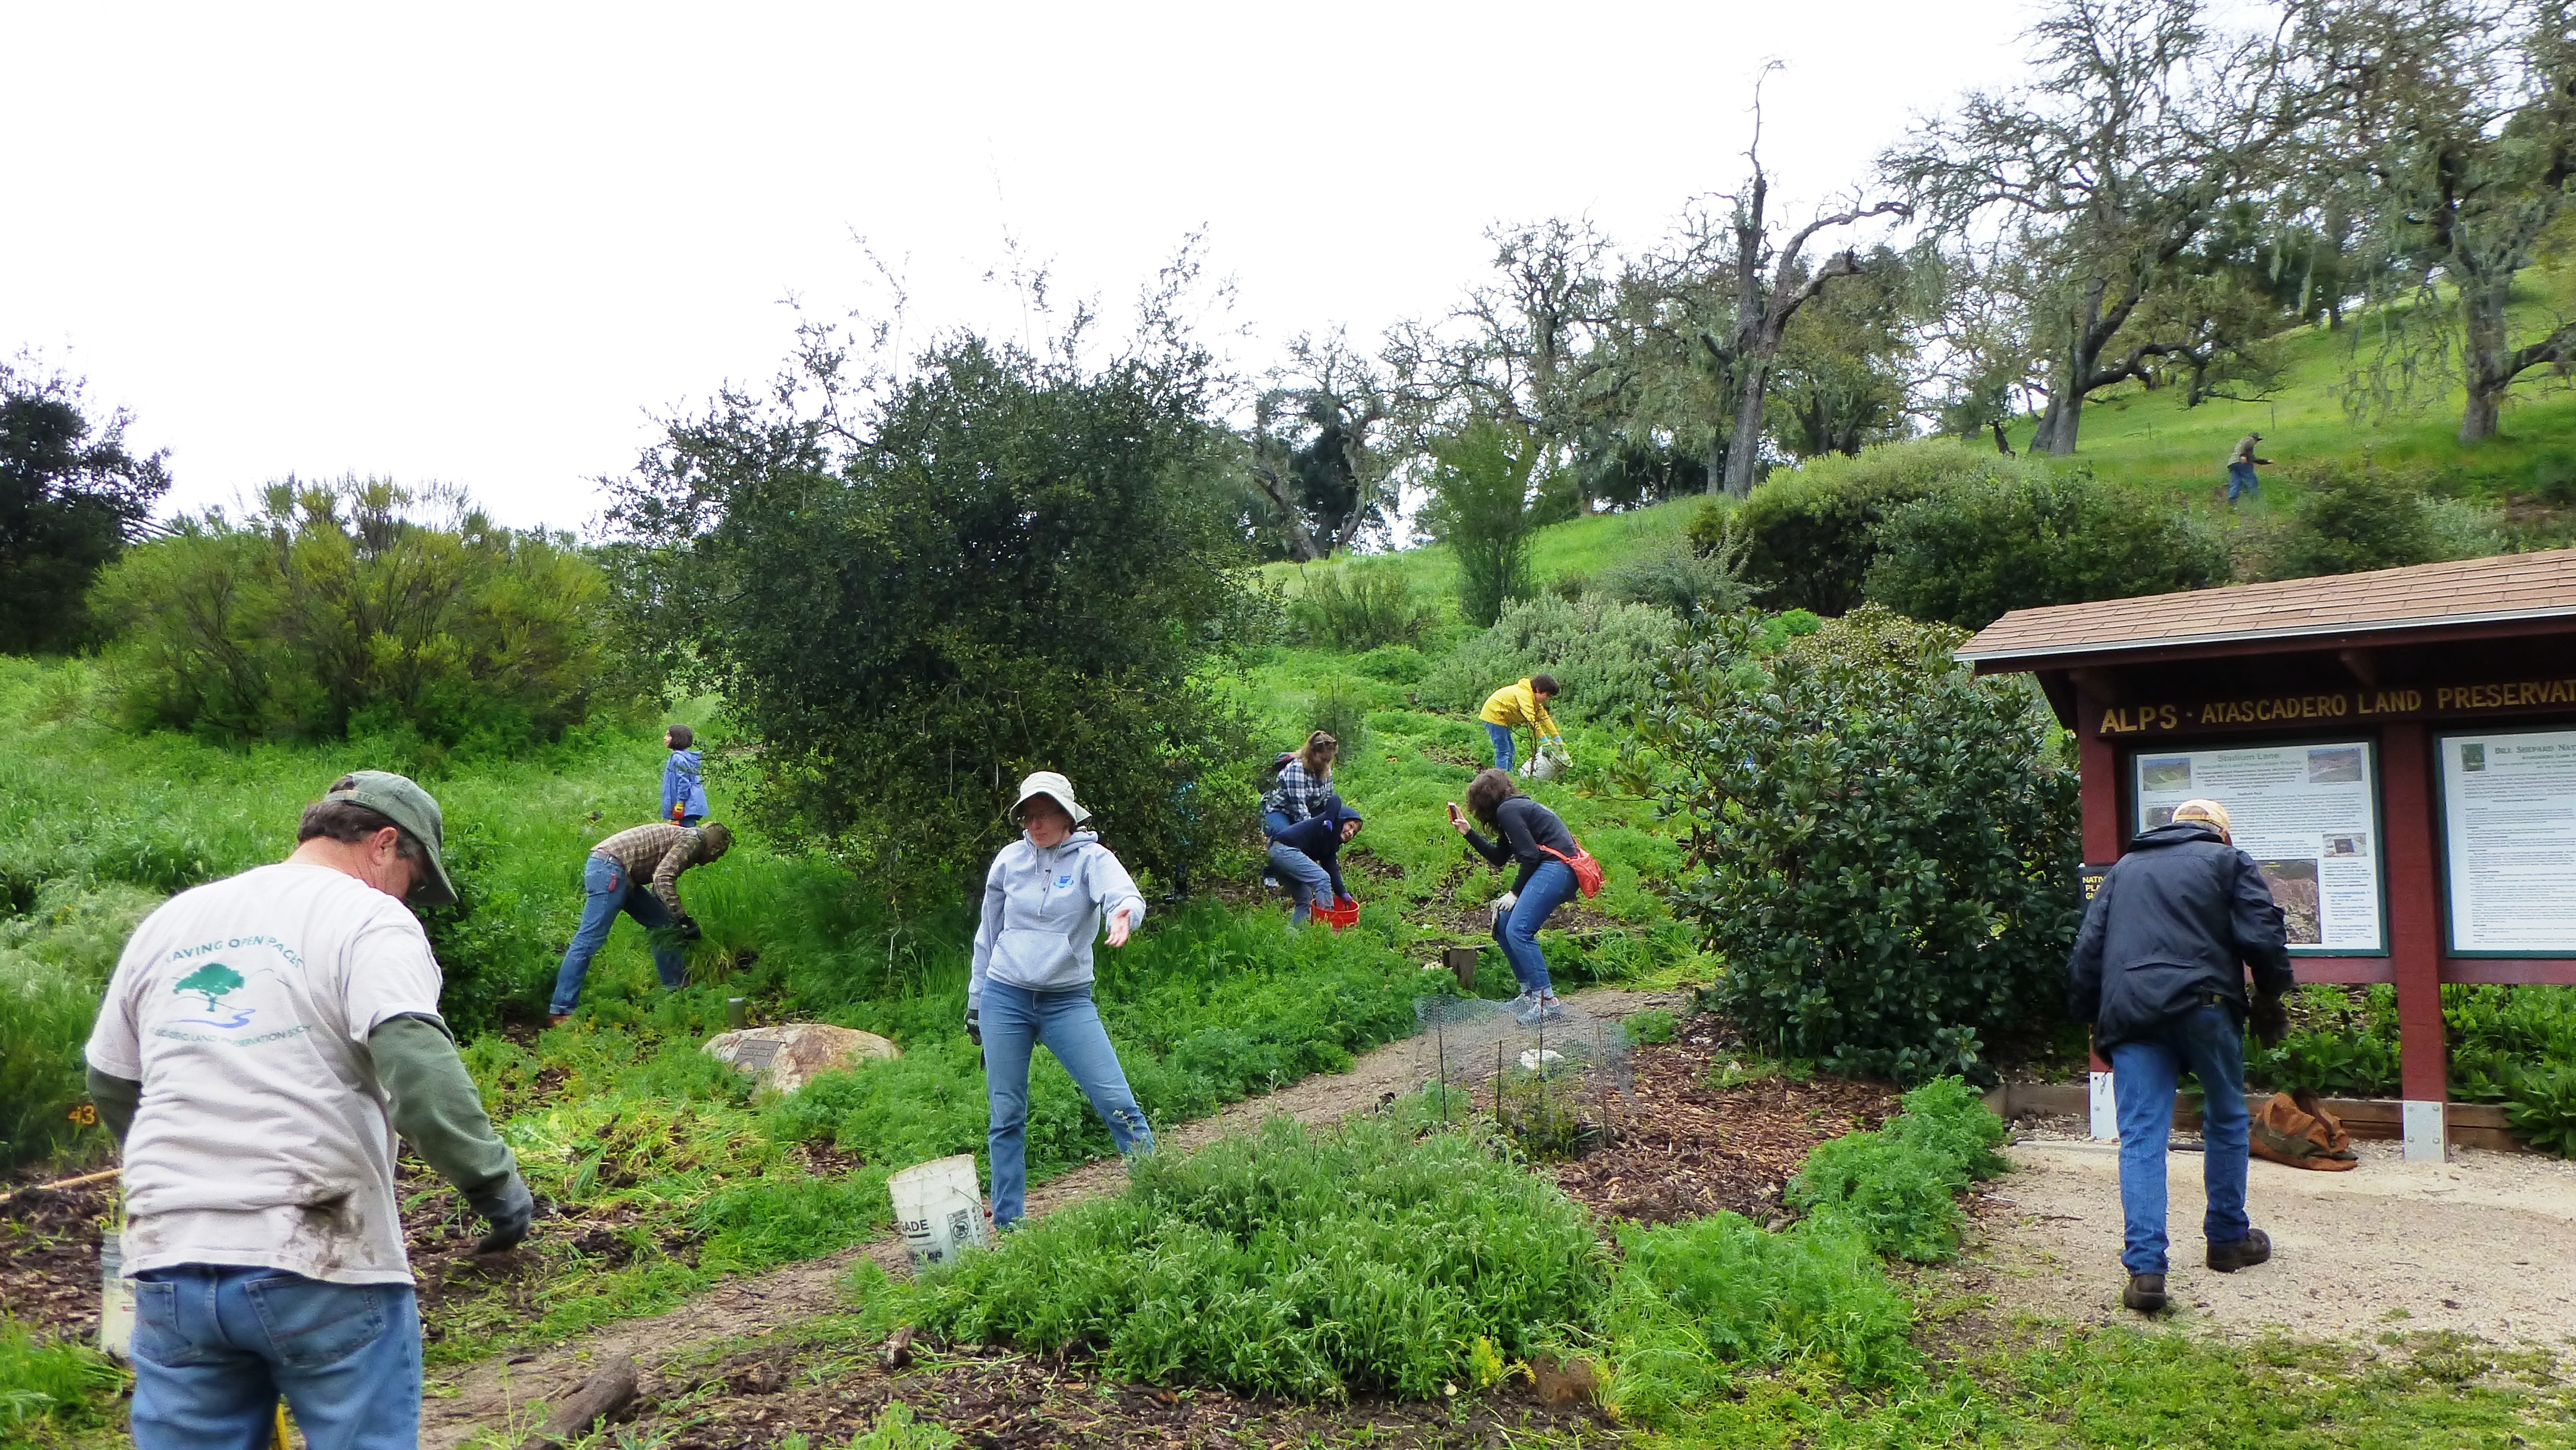 Volunteers weeding the garden.